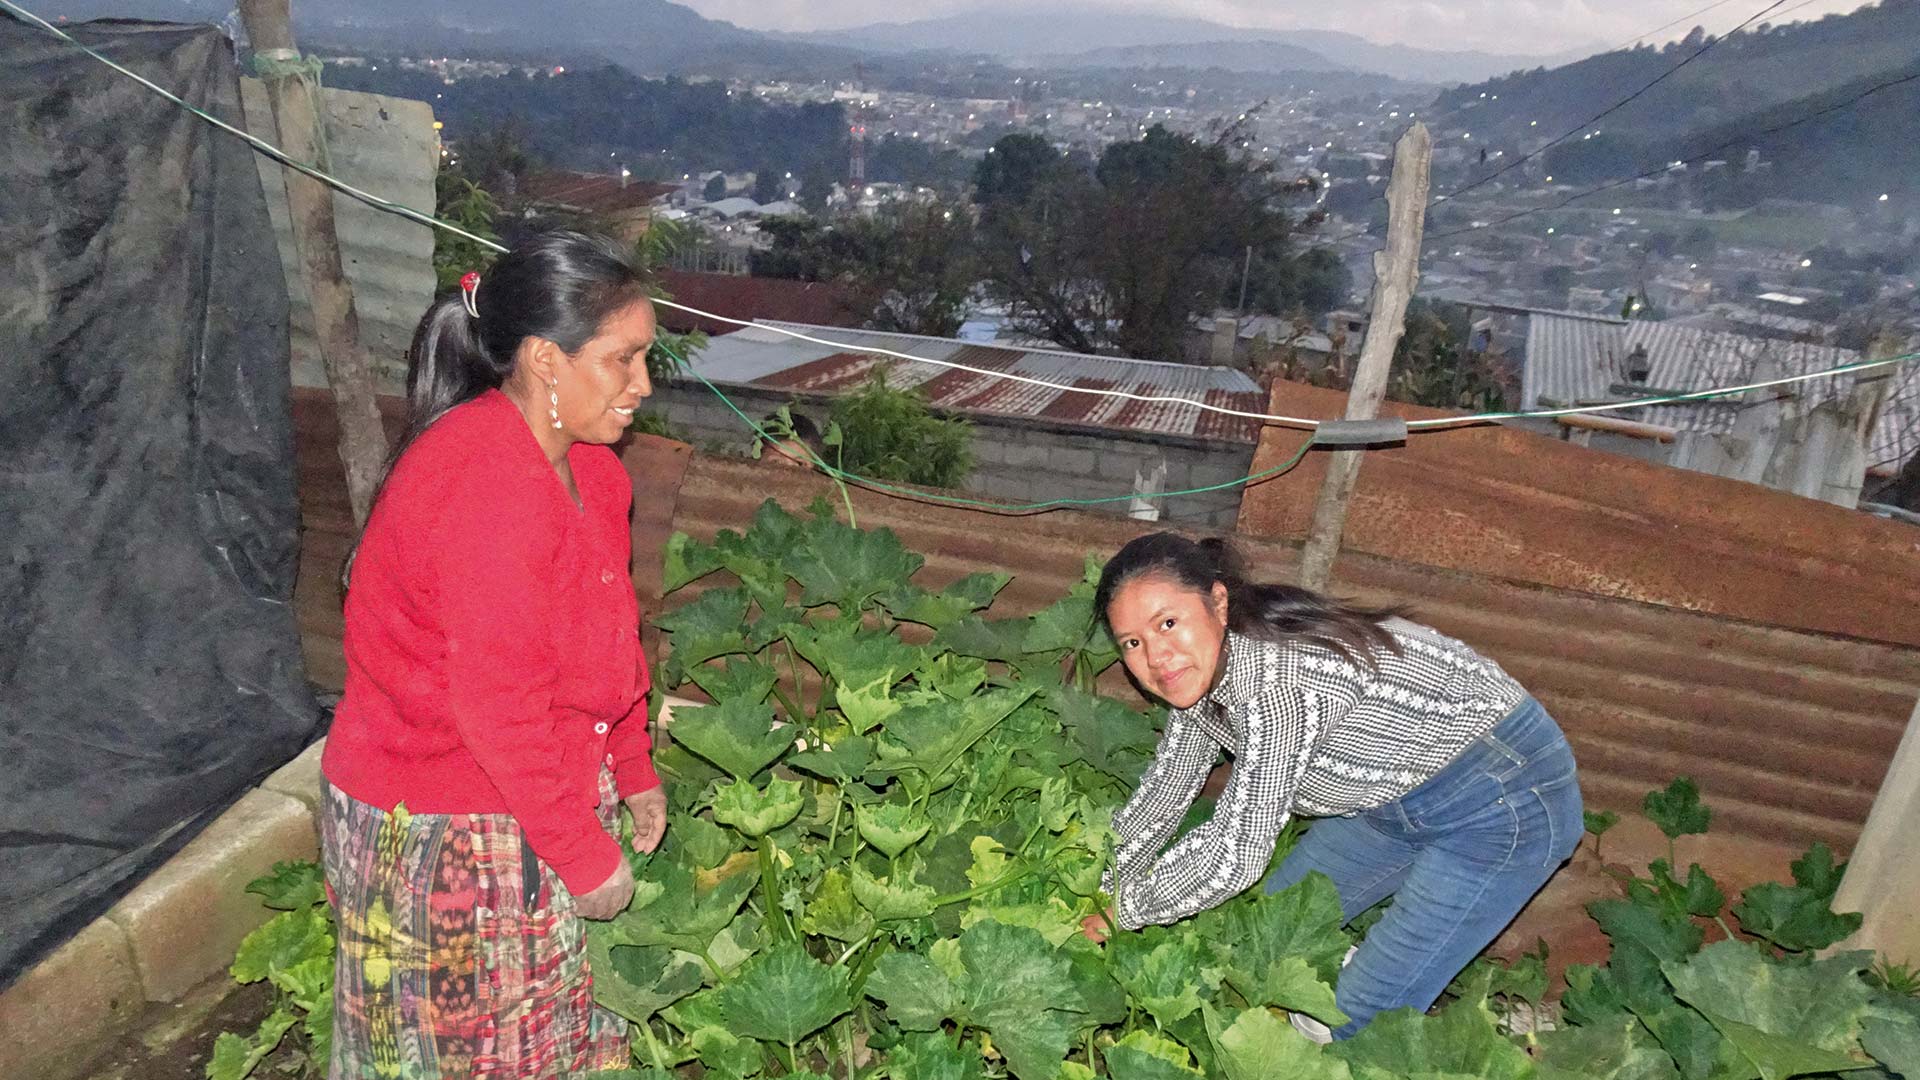 Hilfe bekommt sie von Noemi de Castañeda (rechts) aus der Kirchengemeinde, die ein Gartenprojekt für die Armen ins Leben rief.